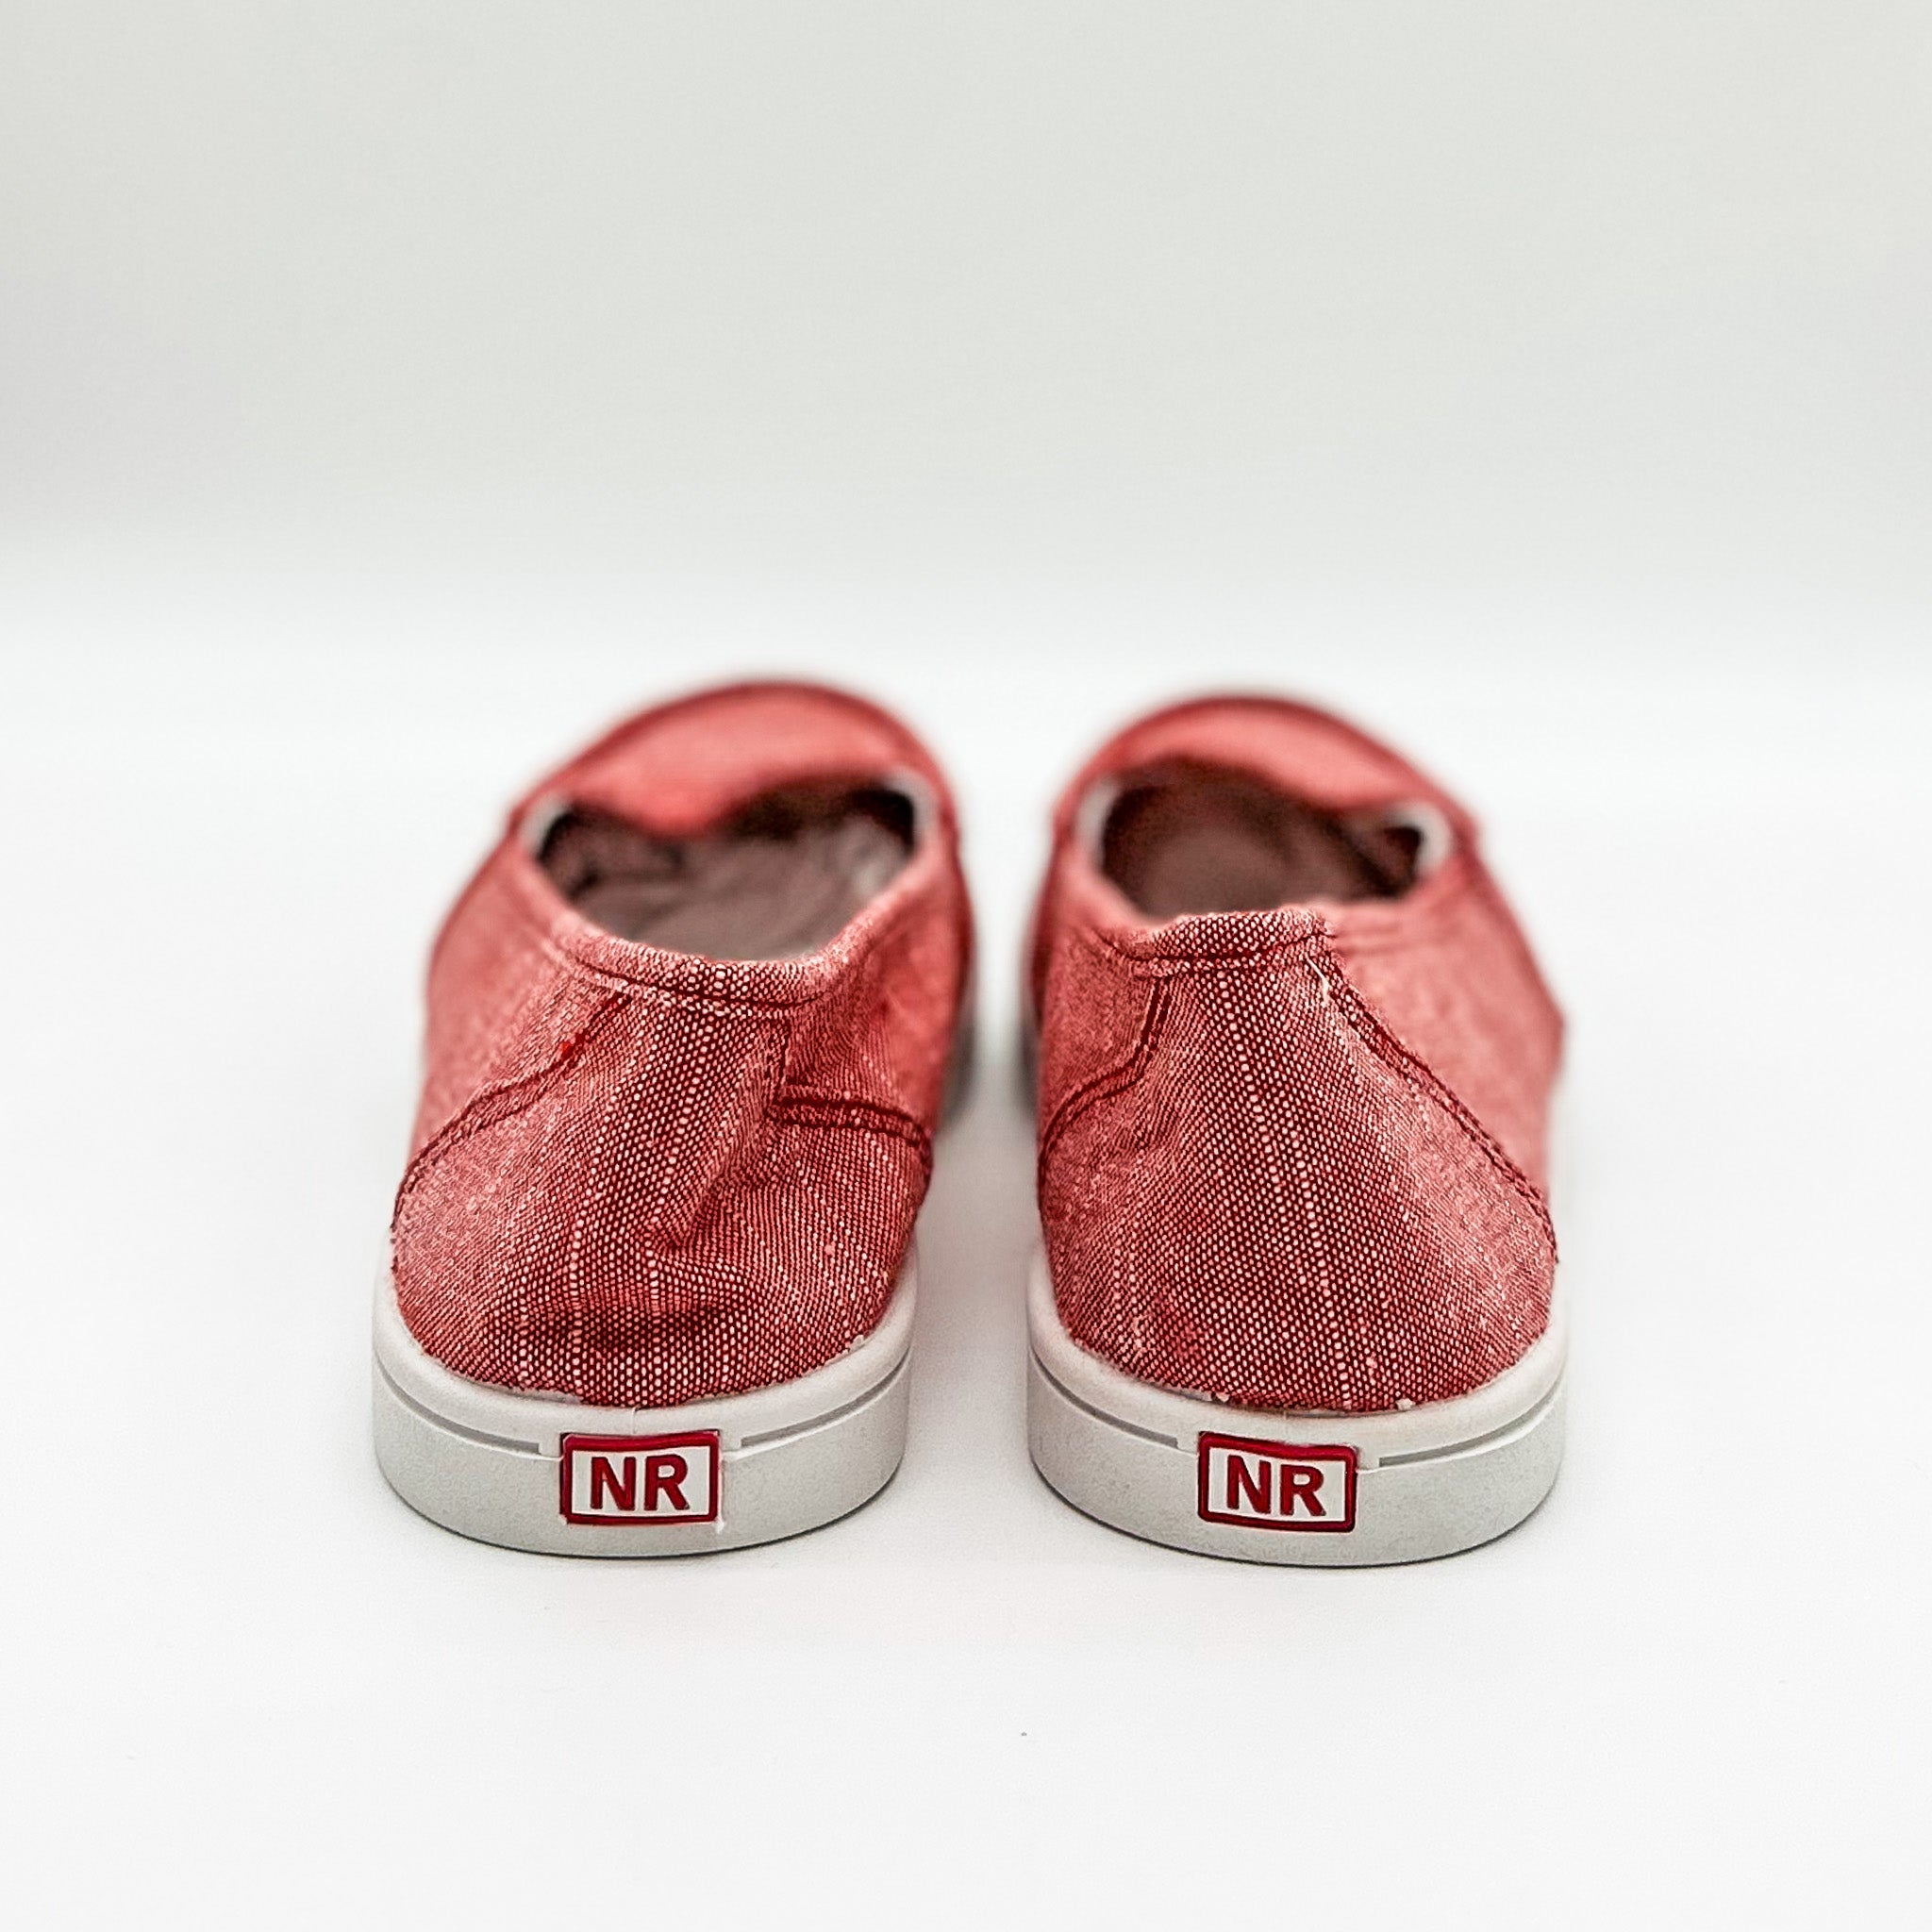 Mackerel Sneaker in Red